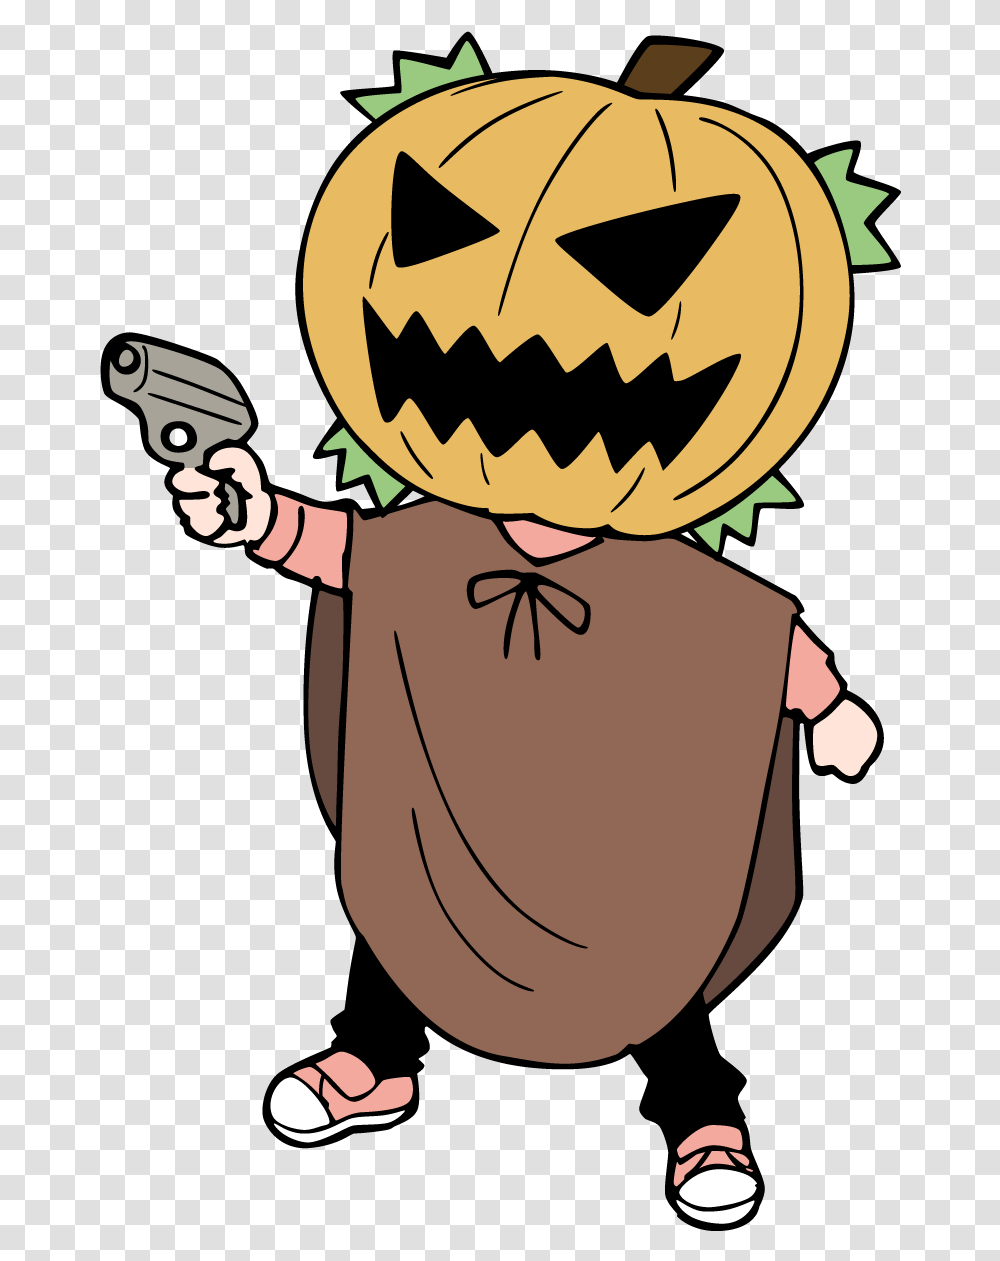 Halloween Pumpkin Mask Anime Pumpkin, Weapon, Weaponry, Plant, Gun Transparent Png